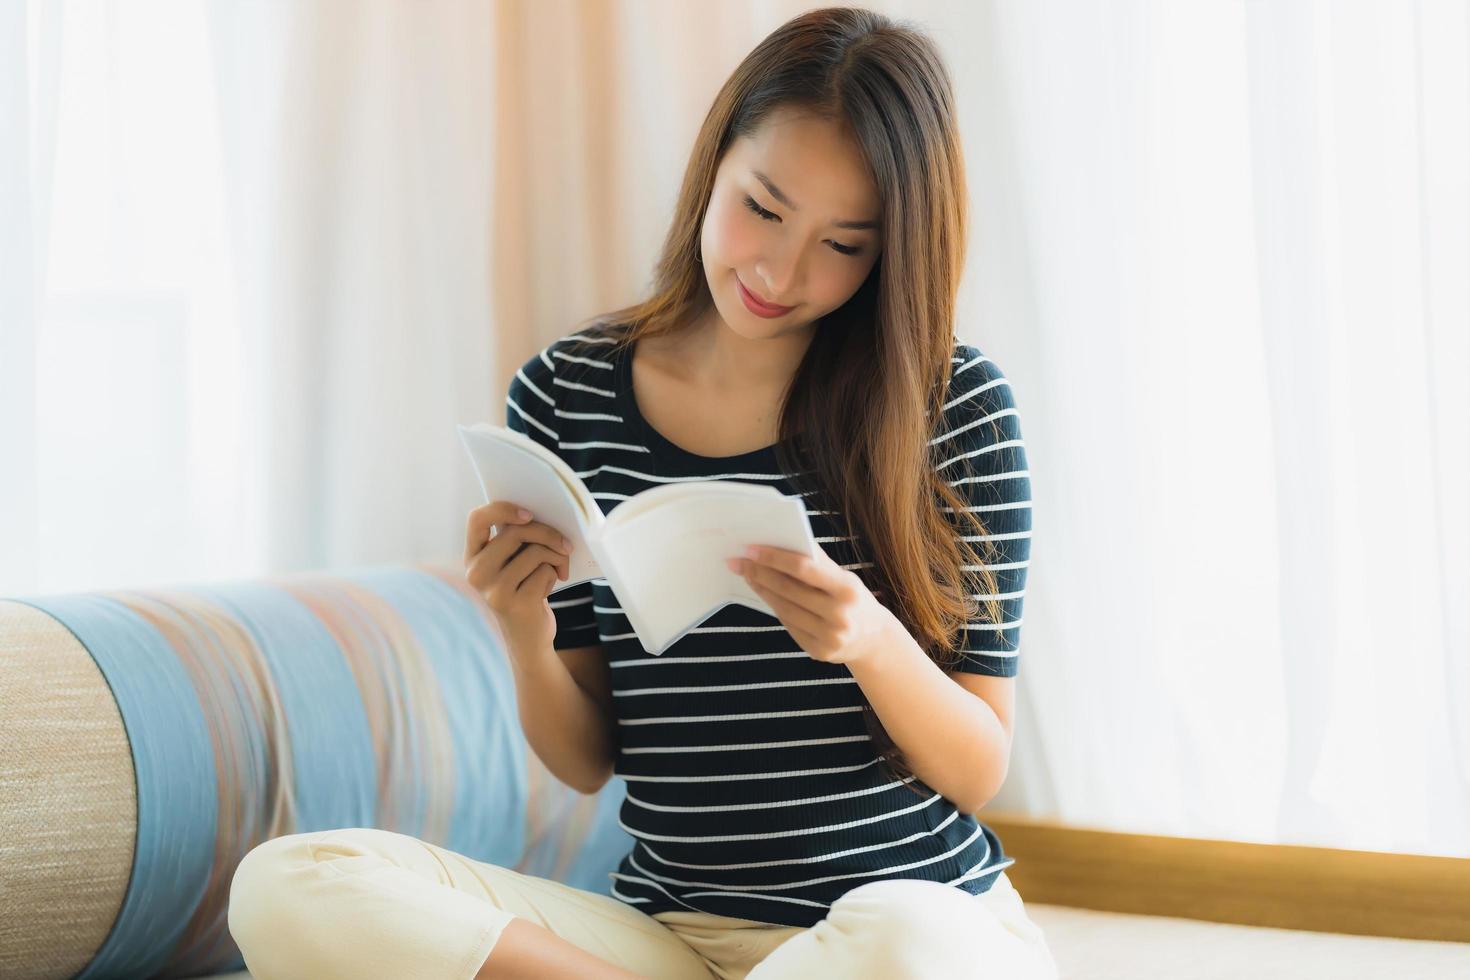 Portrait belle jeune femme asiatique lisant un livre sur un canapé dans le salon photo